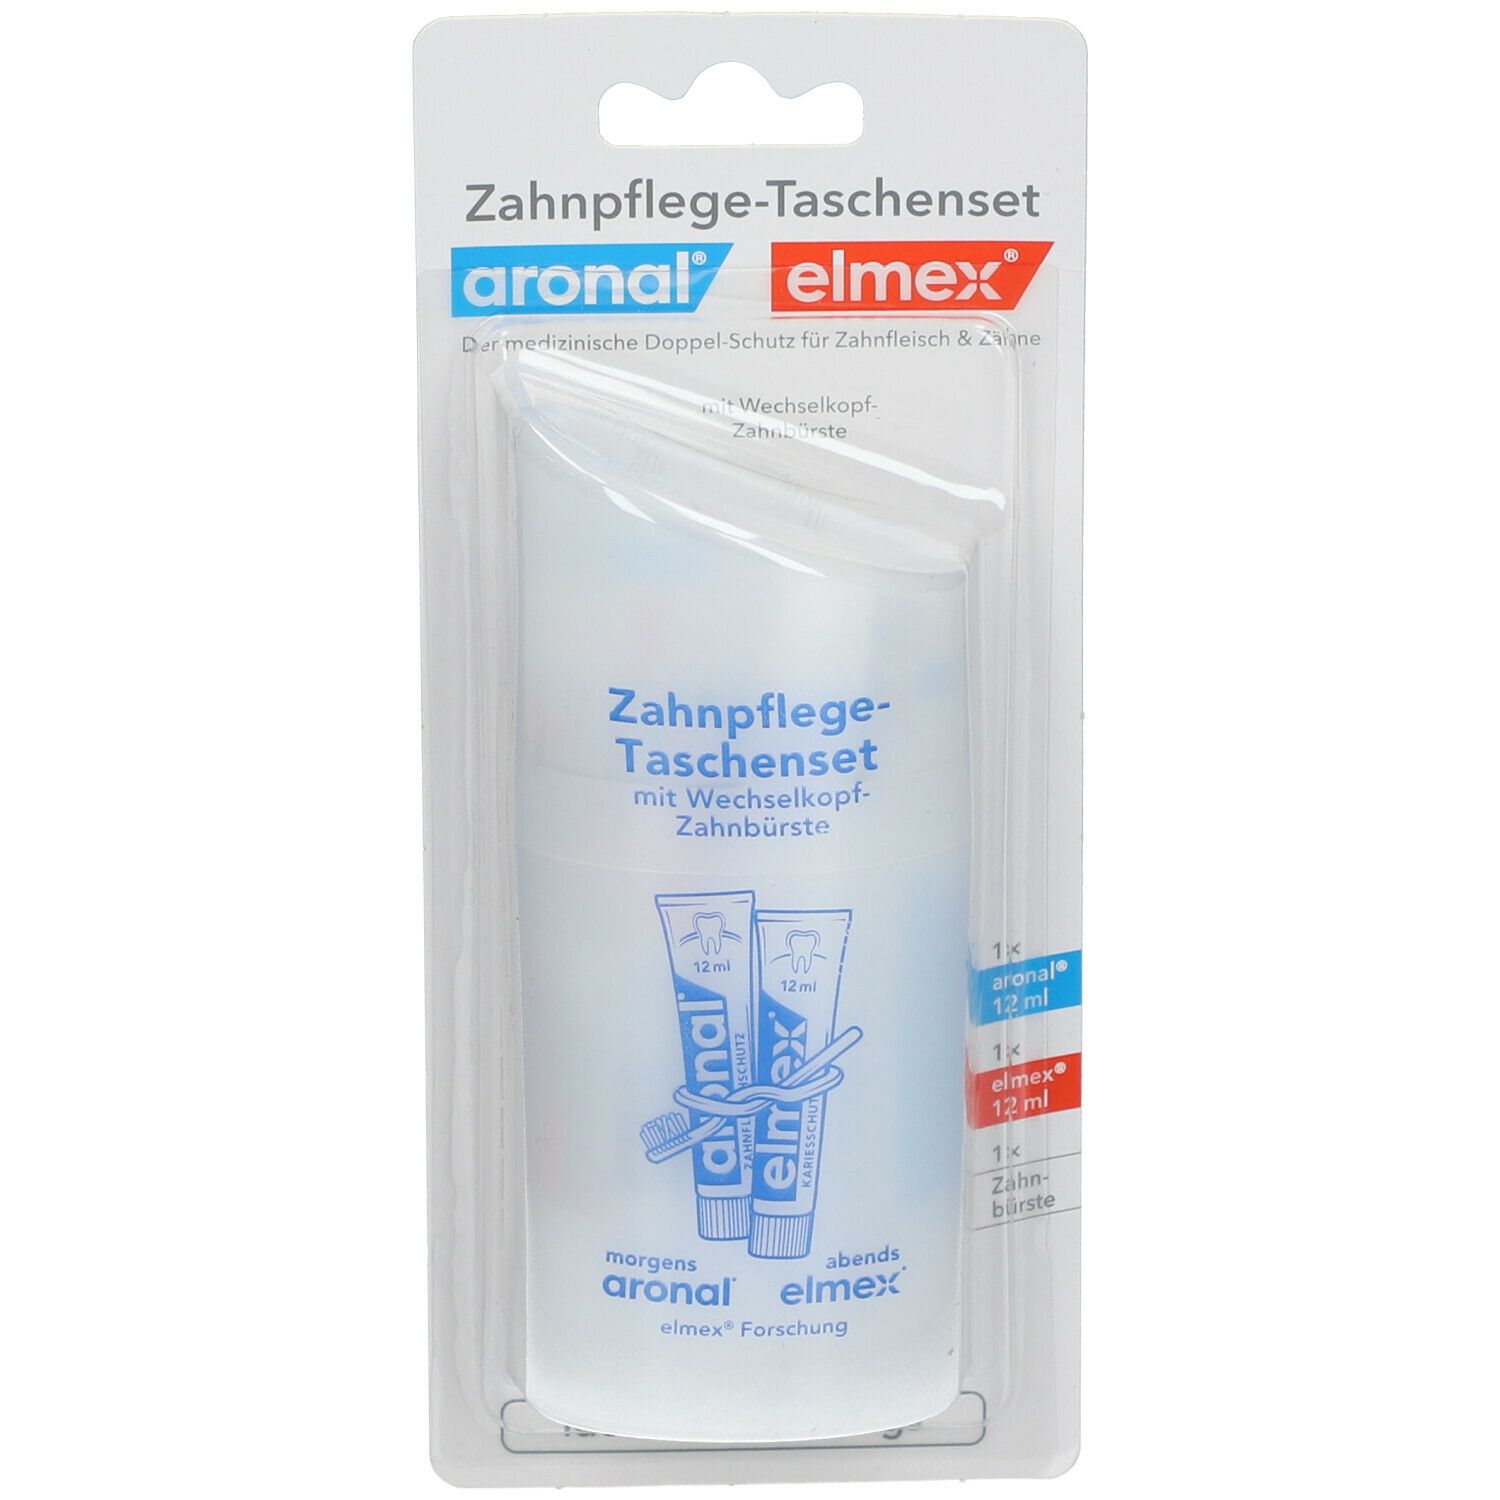 aronal und elmex Zahnpflege-Taschenset